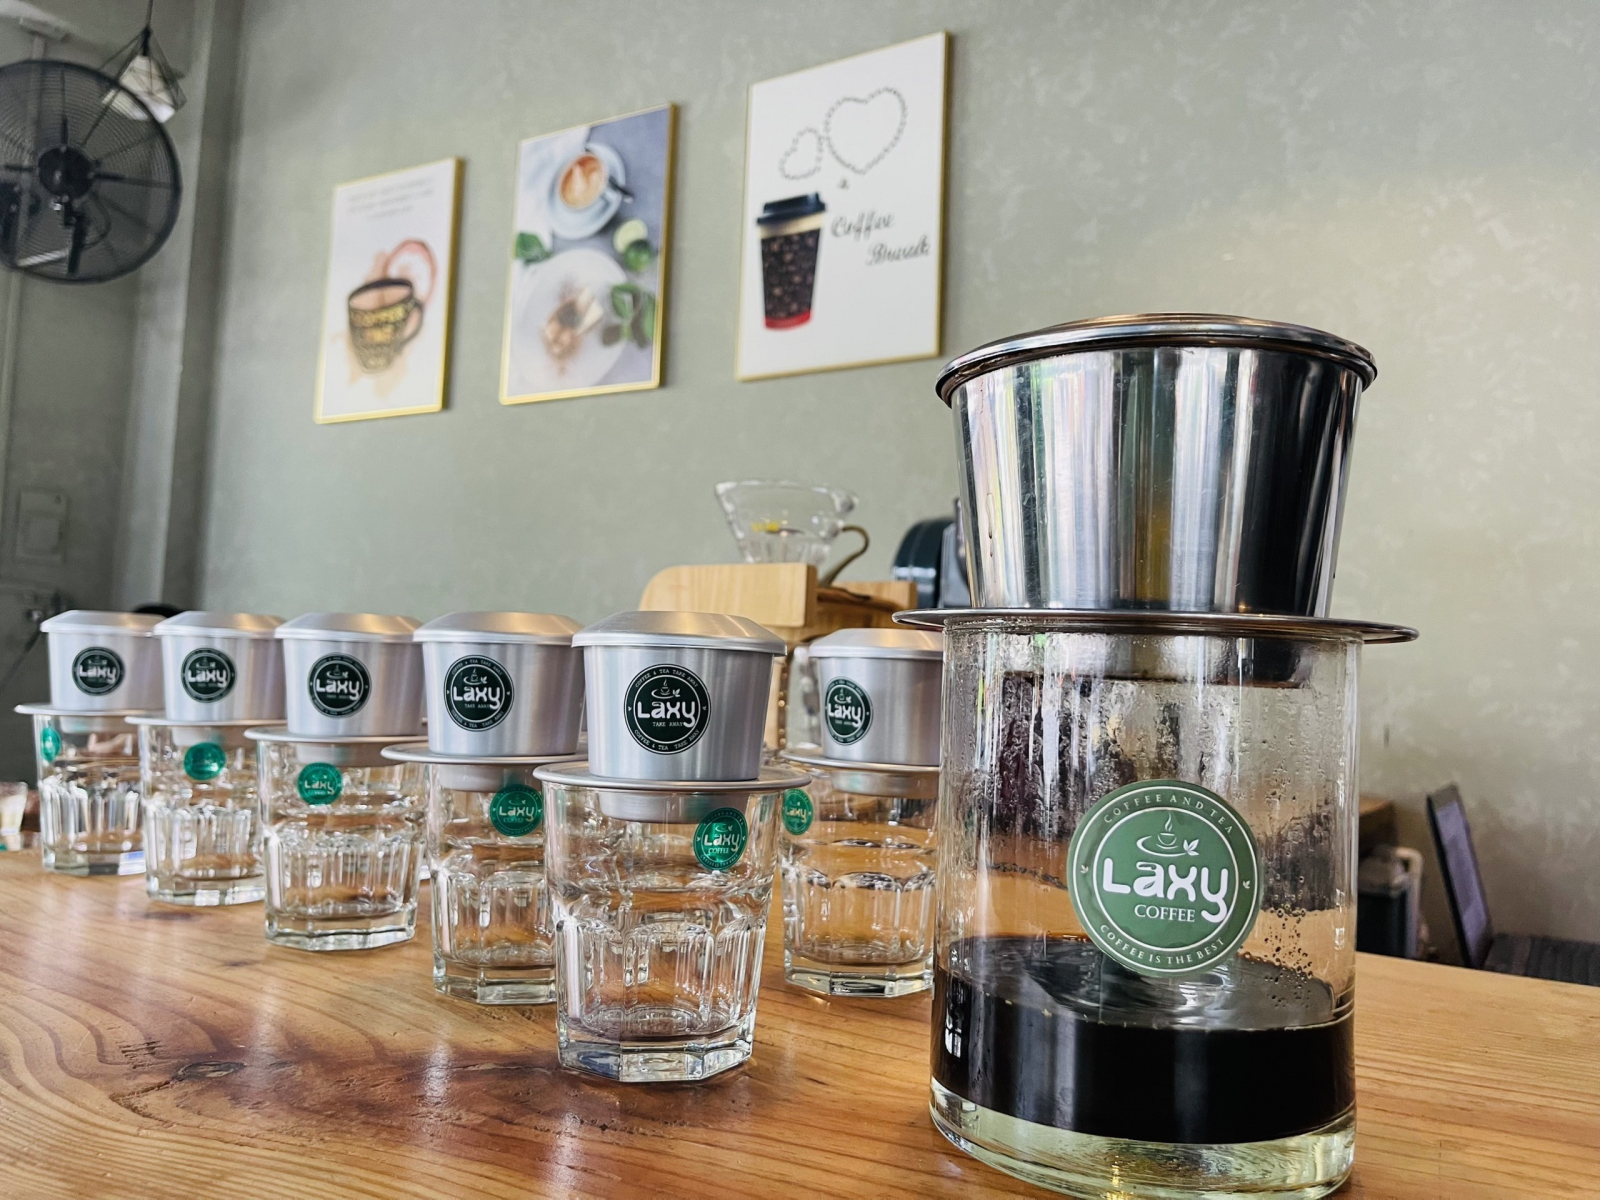 Laxy Coffee đã chuyển về địa điểm mới 103 Trương Vĩnh Ký, Q.TP